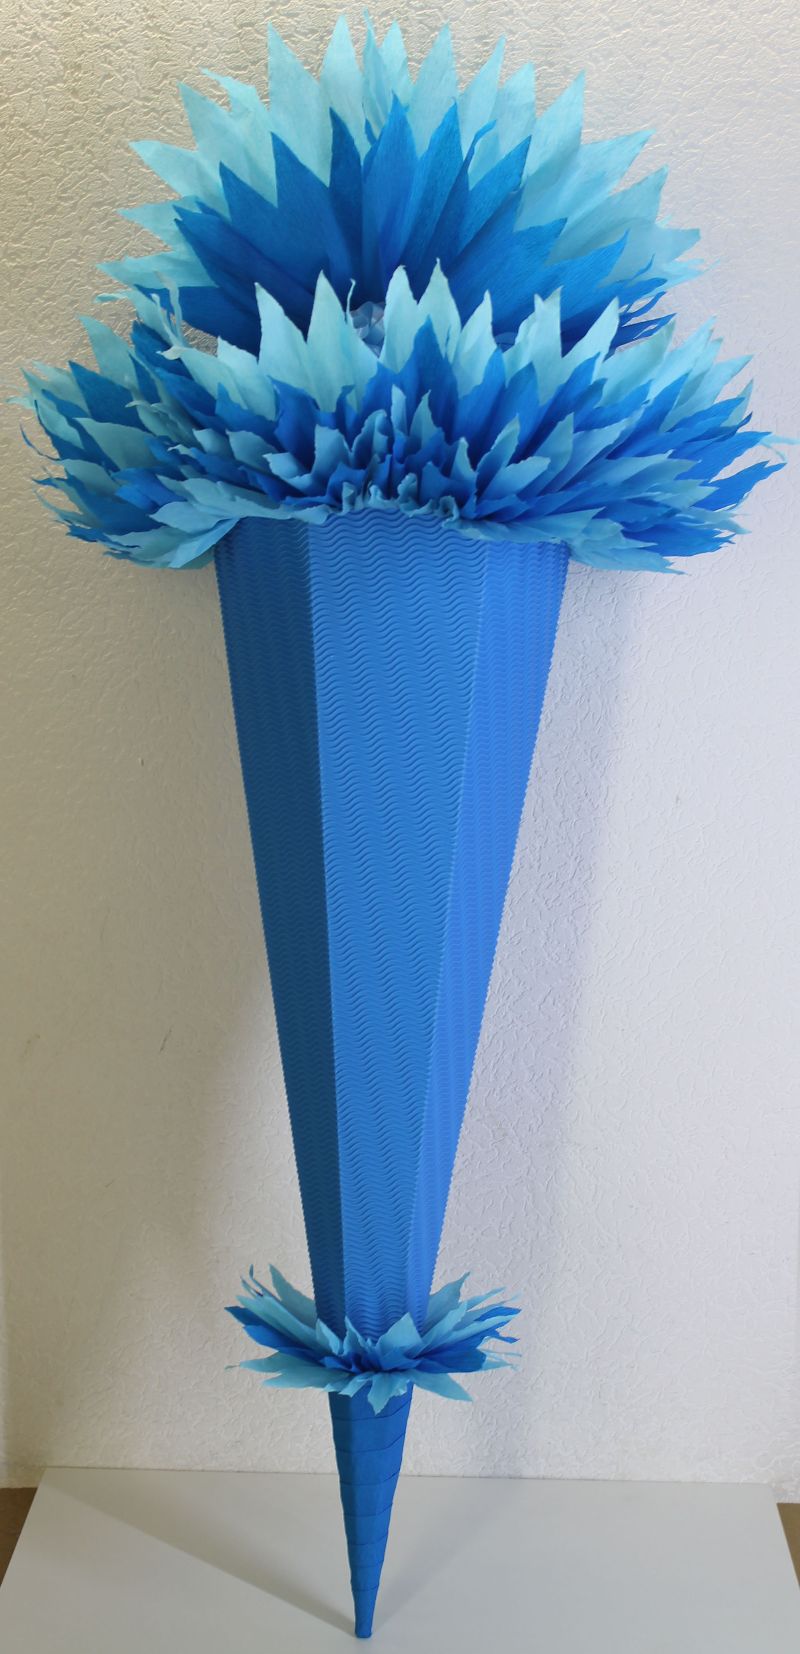  - Schultüte Zuckertüte Rohling zum selbst verzieren Rohling 70 75 80 85 90 100 cm / 1m für Jungen HANDARBEIT blau hellblau